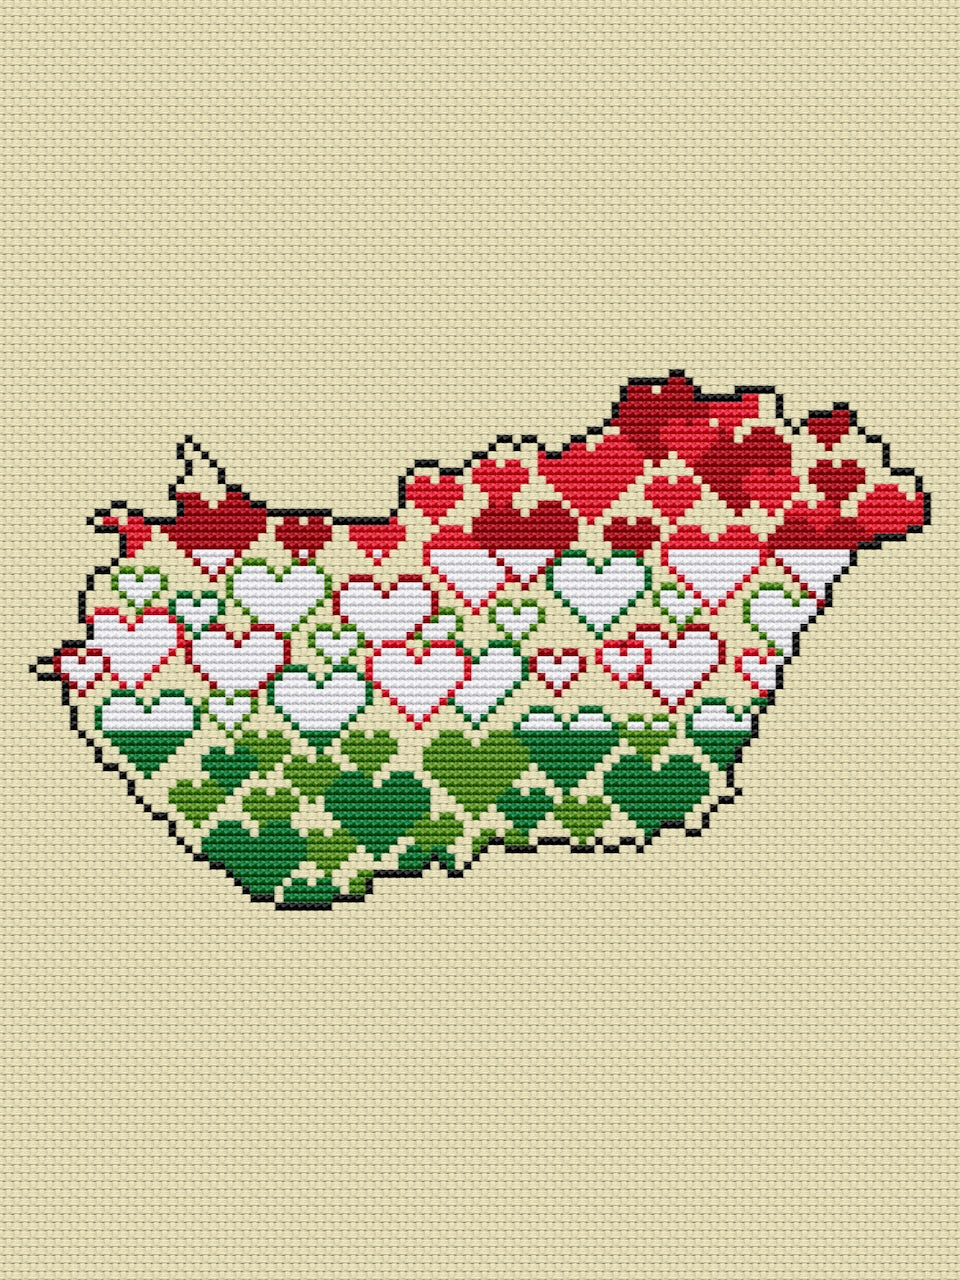 Hungary free cross stitch pattern